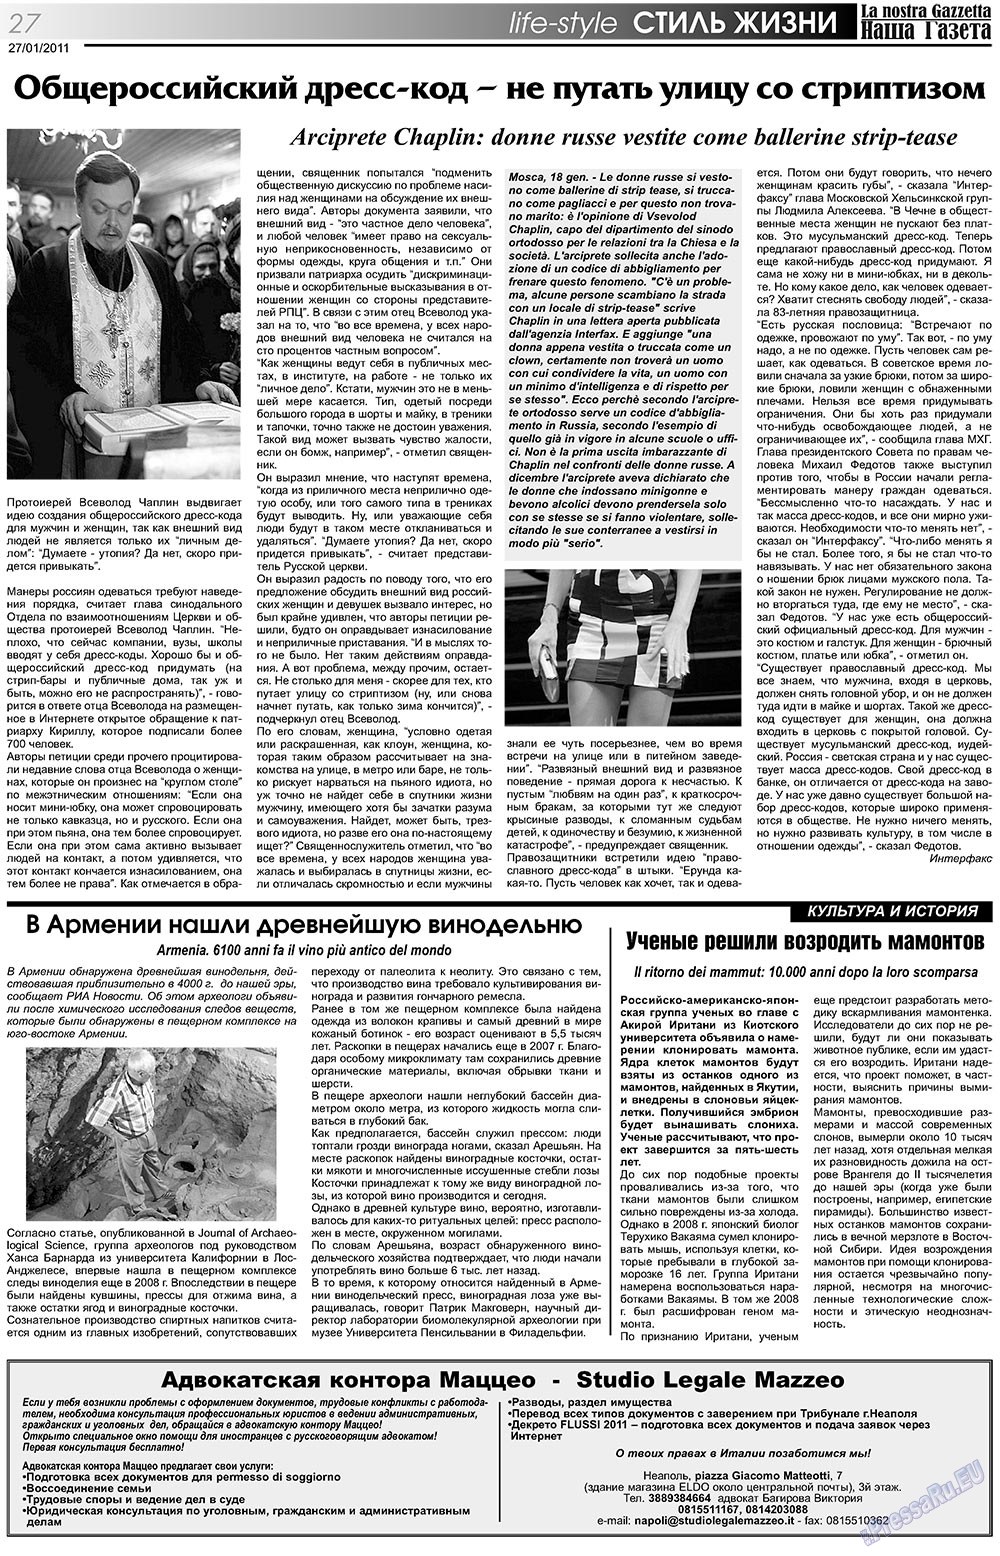 Наша Газета Италия, газета. 2011 №125 стр.27